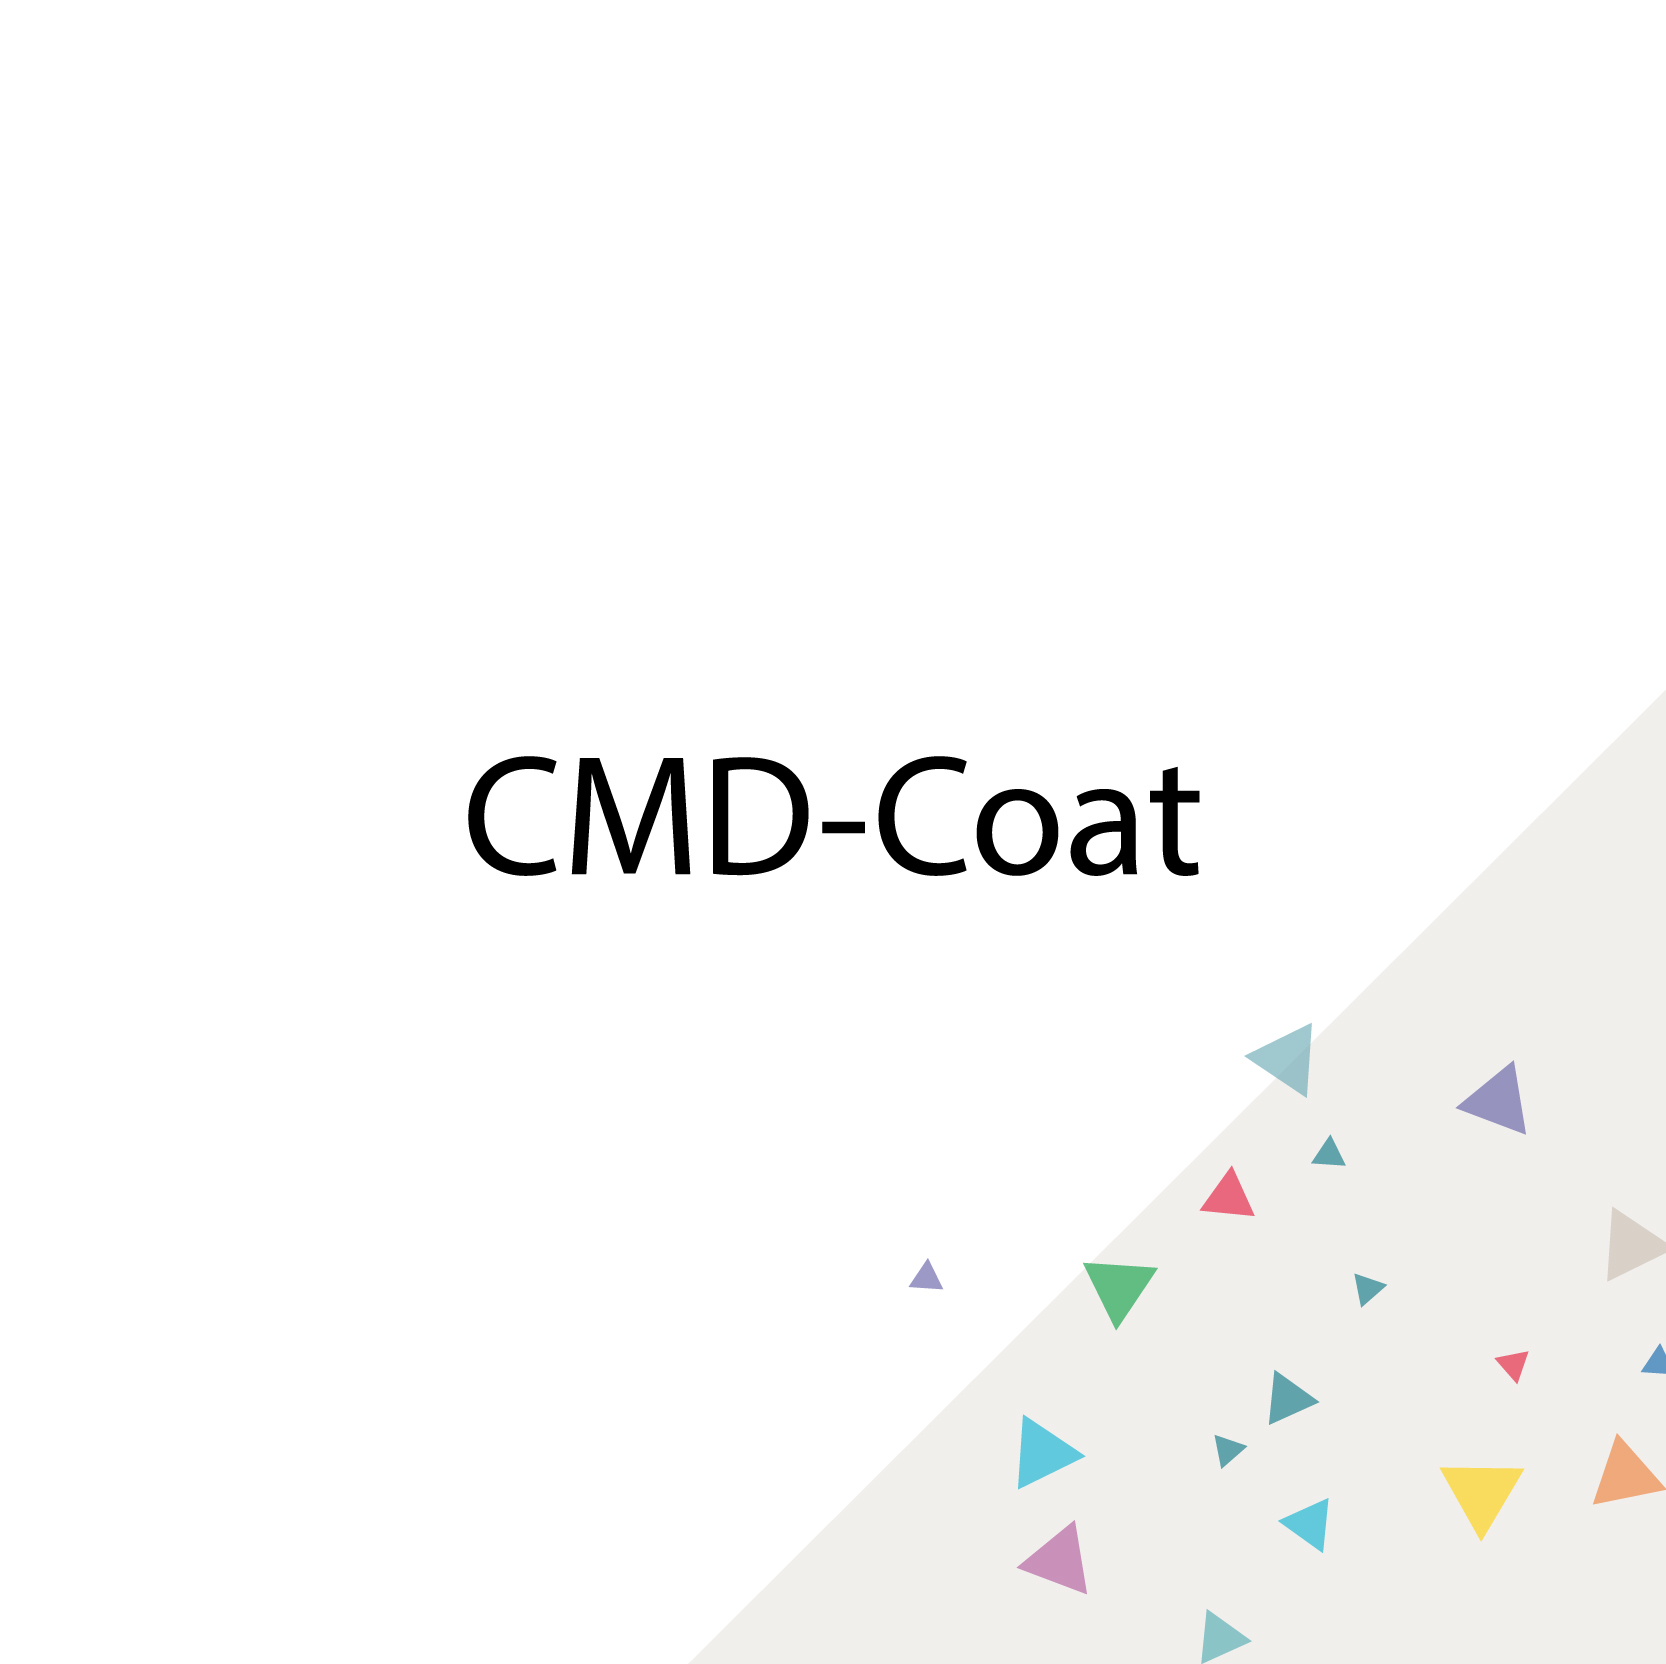 CMD-Coat